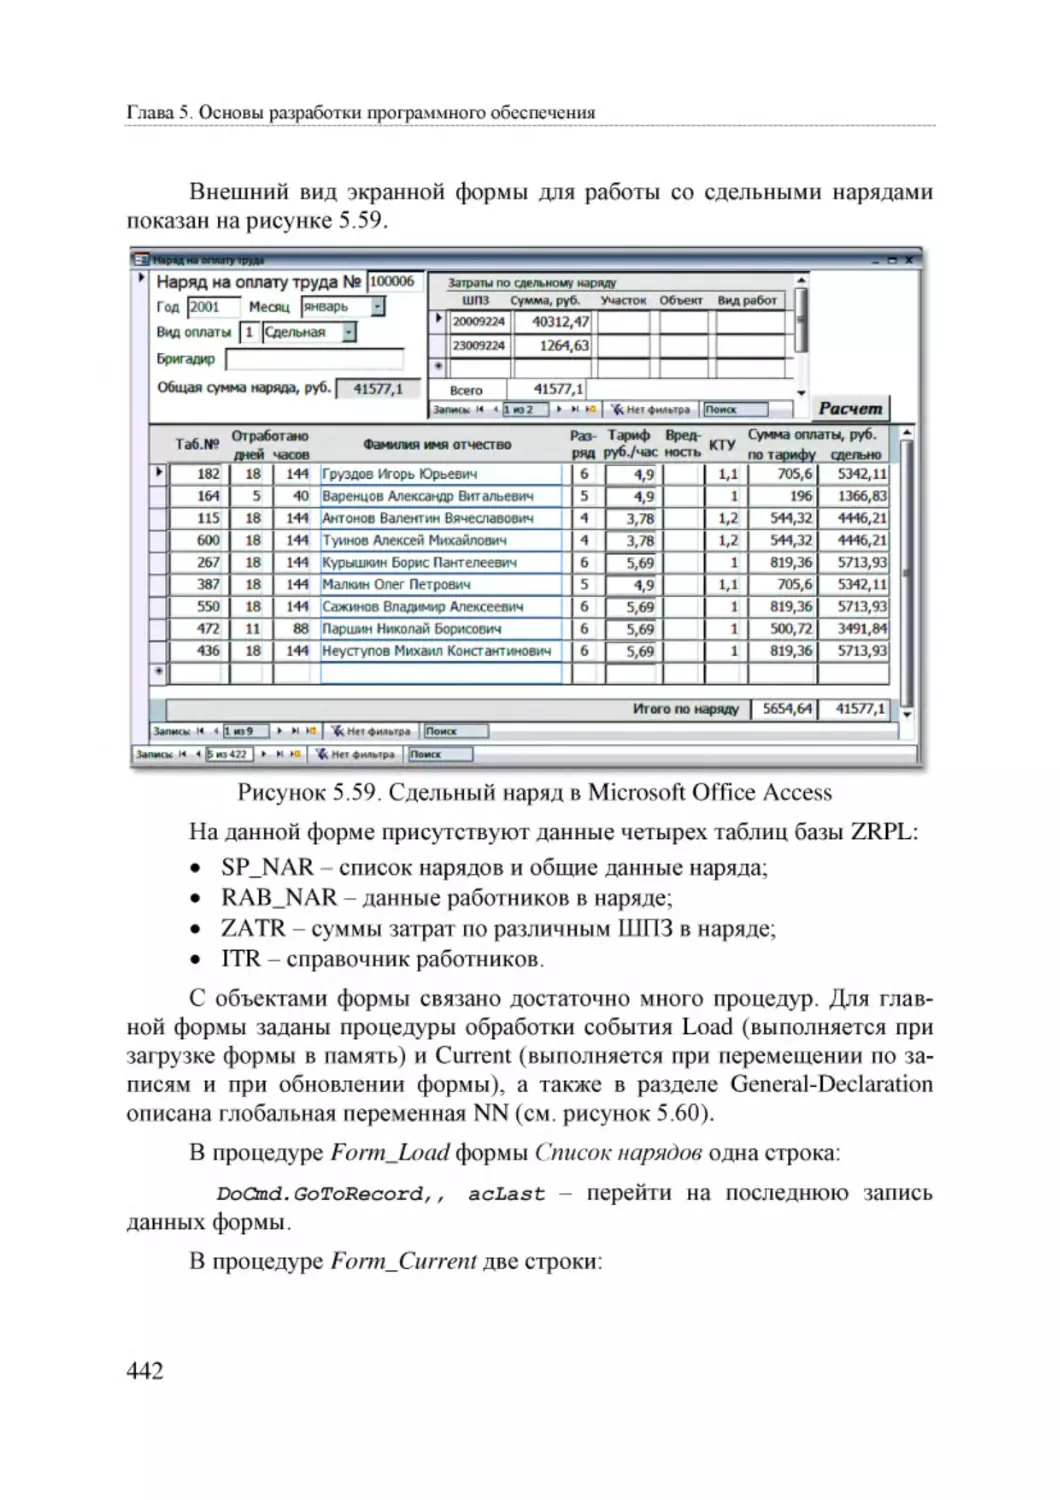 Informatika_Uchebnik_dlya_vuzov_2010 442